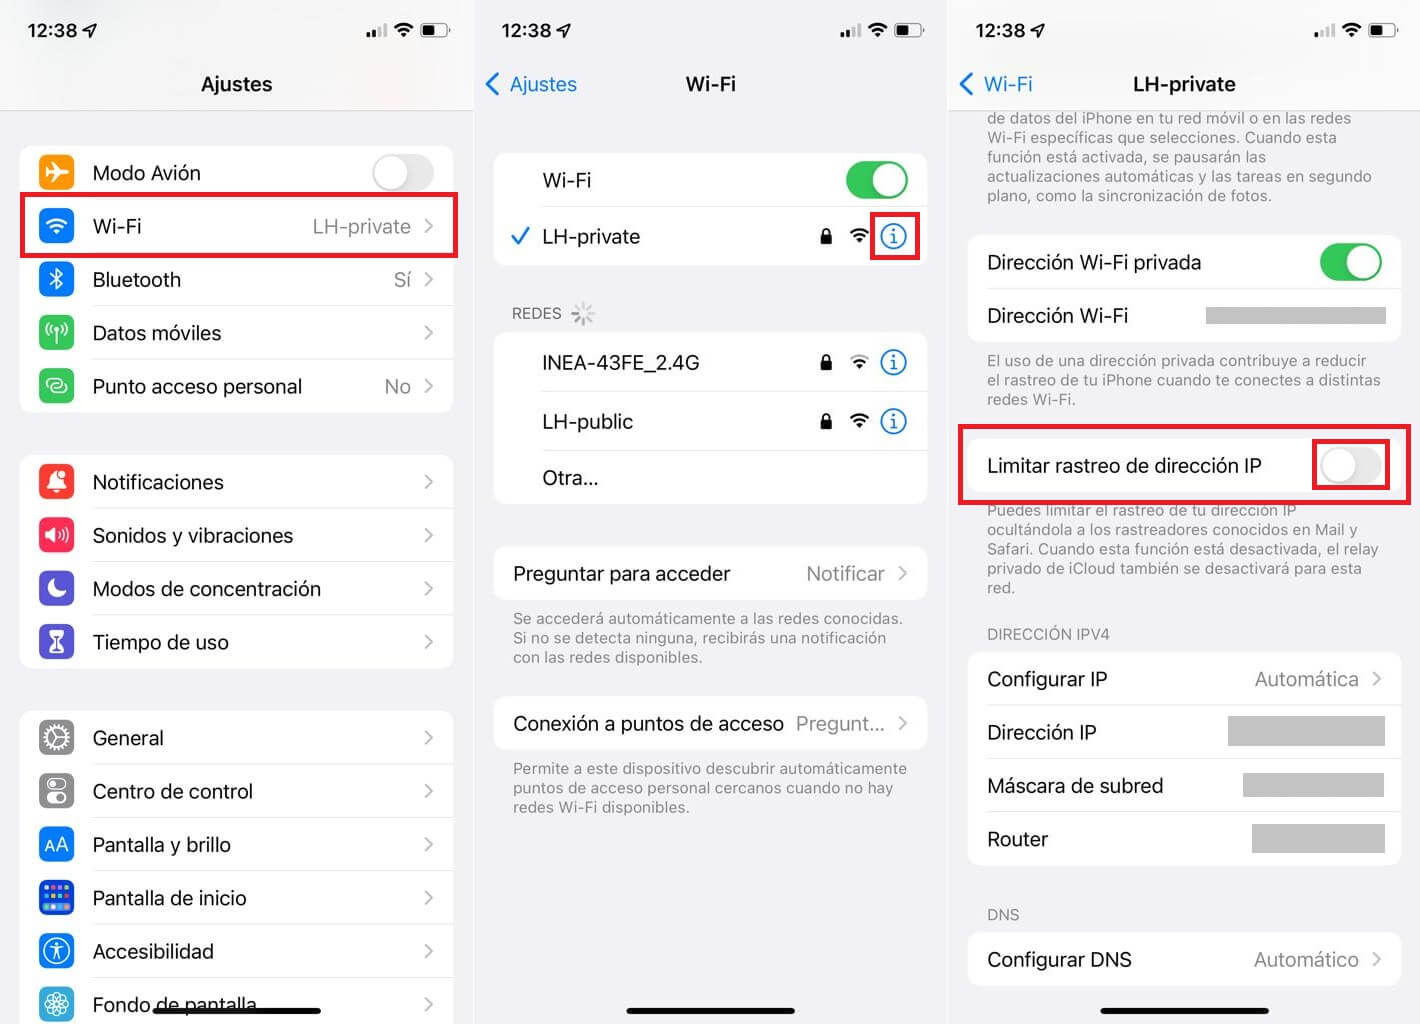 desactivar iCloud Relay privado de iPhone en una red wifi especifica